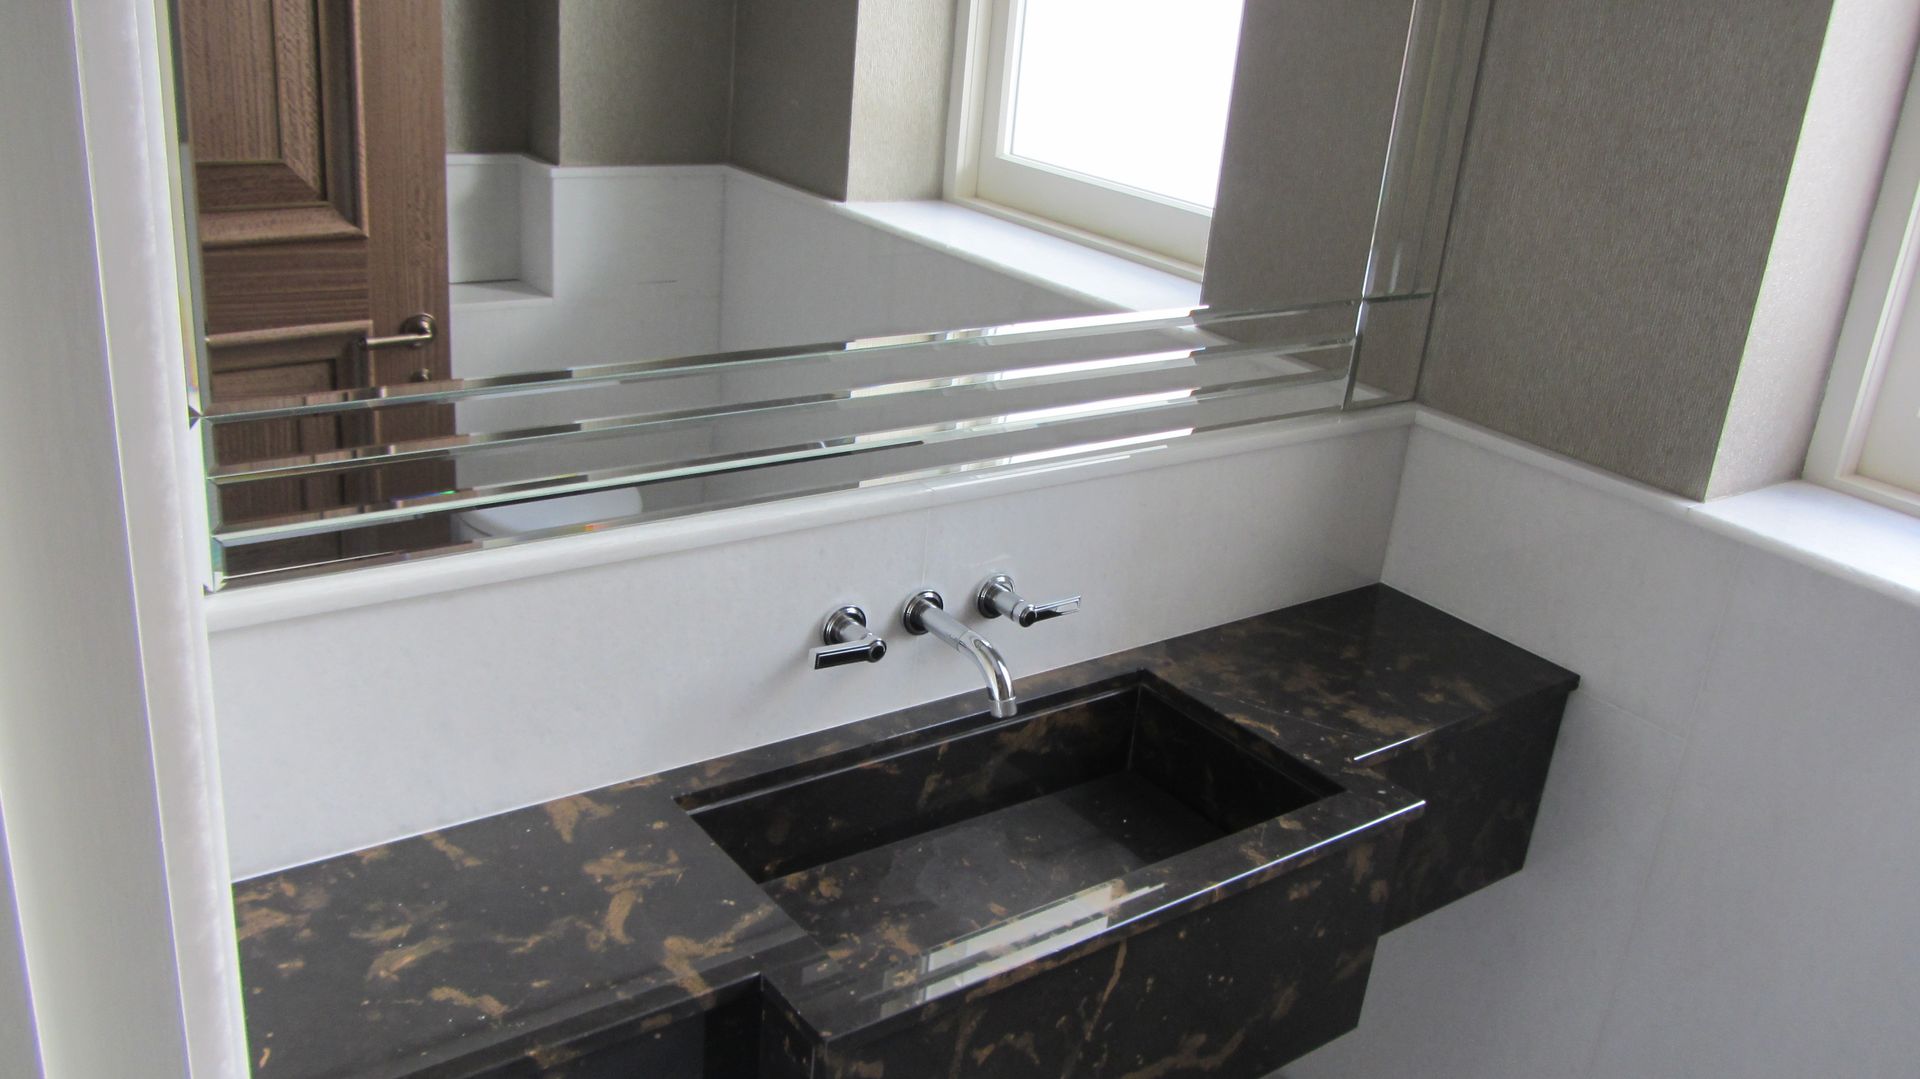 Black Marble bathroom Arte 2000 Ванная в классическом стиле Мрамор marble bathroom